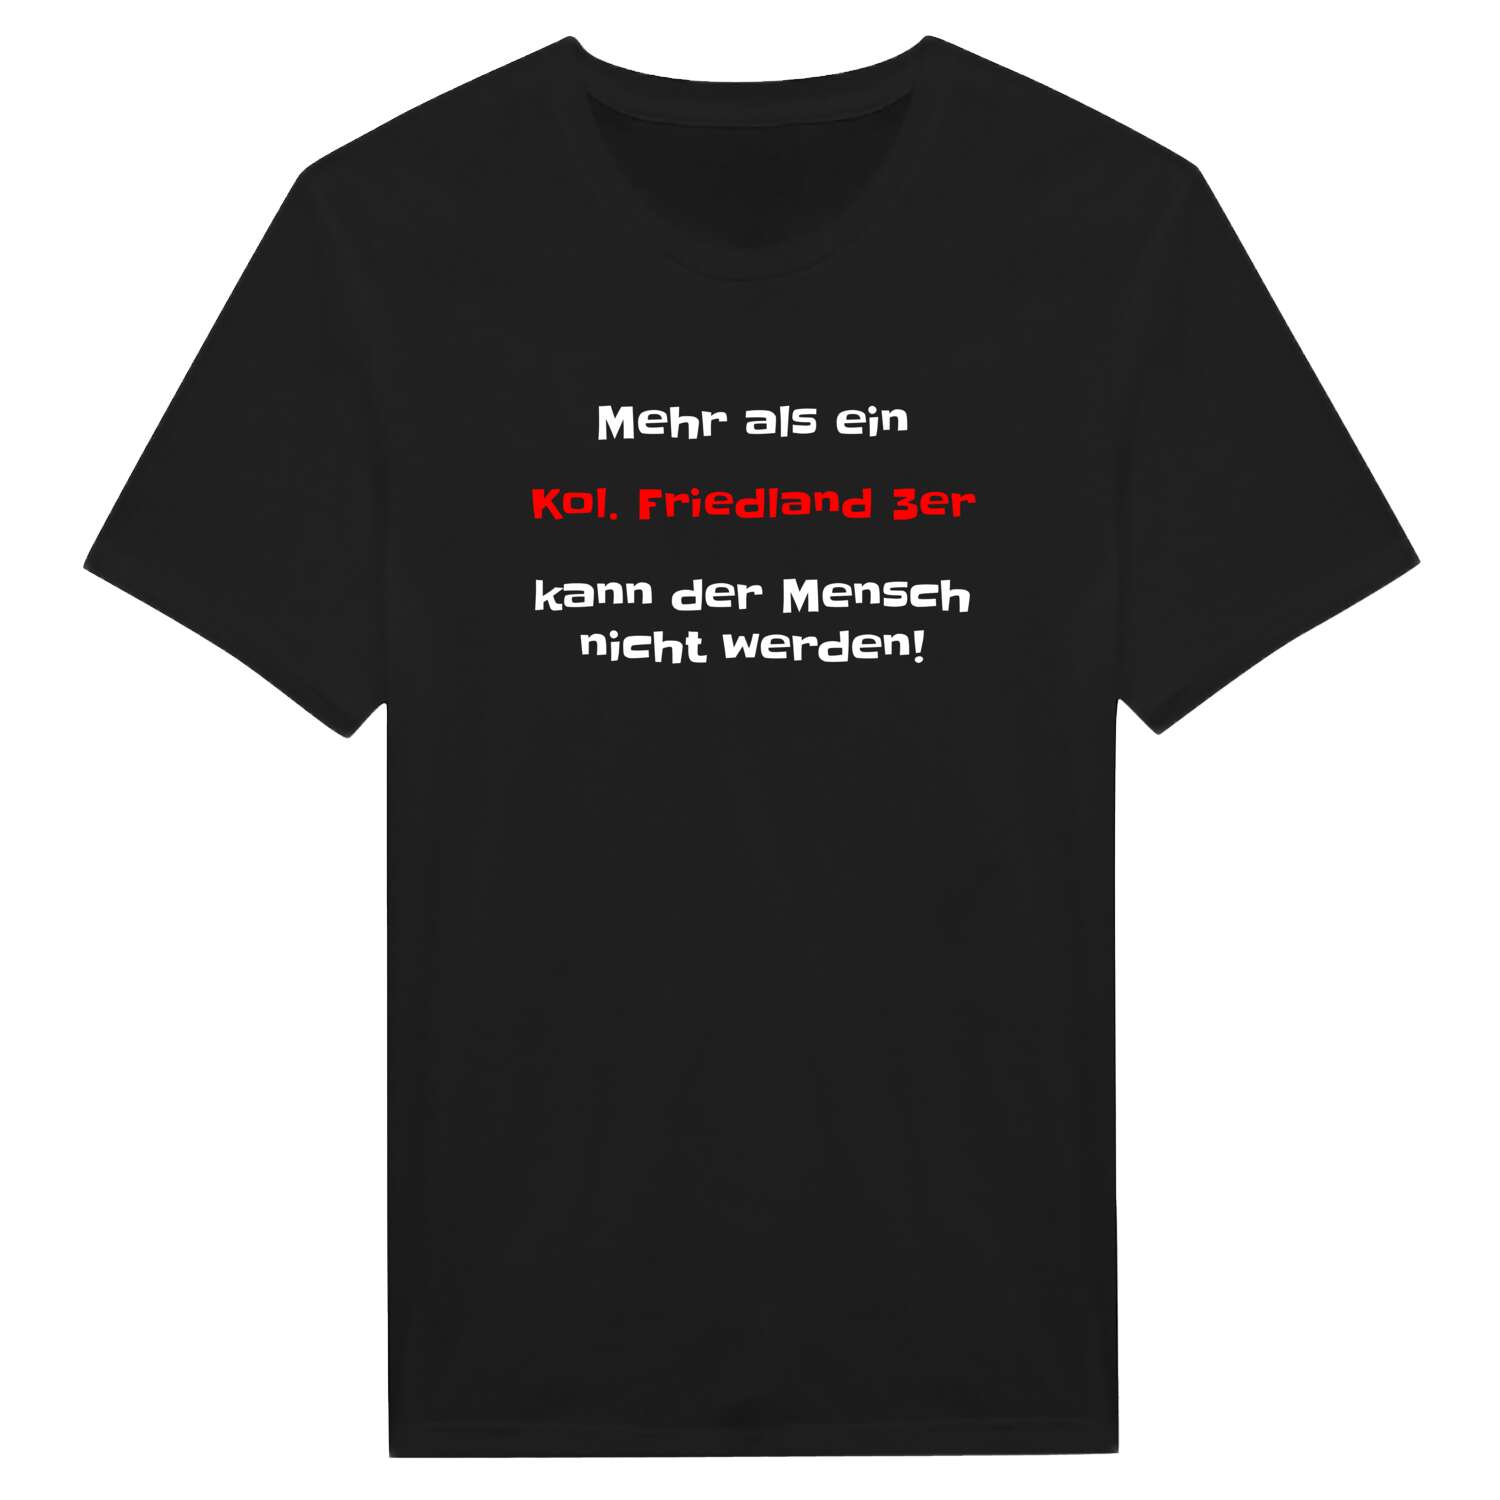 Kol. Friedland 3 T-Shirt »Mehr als ein«